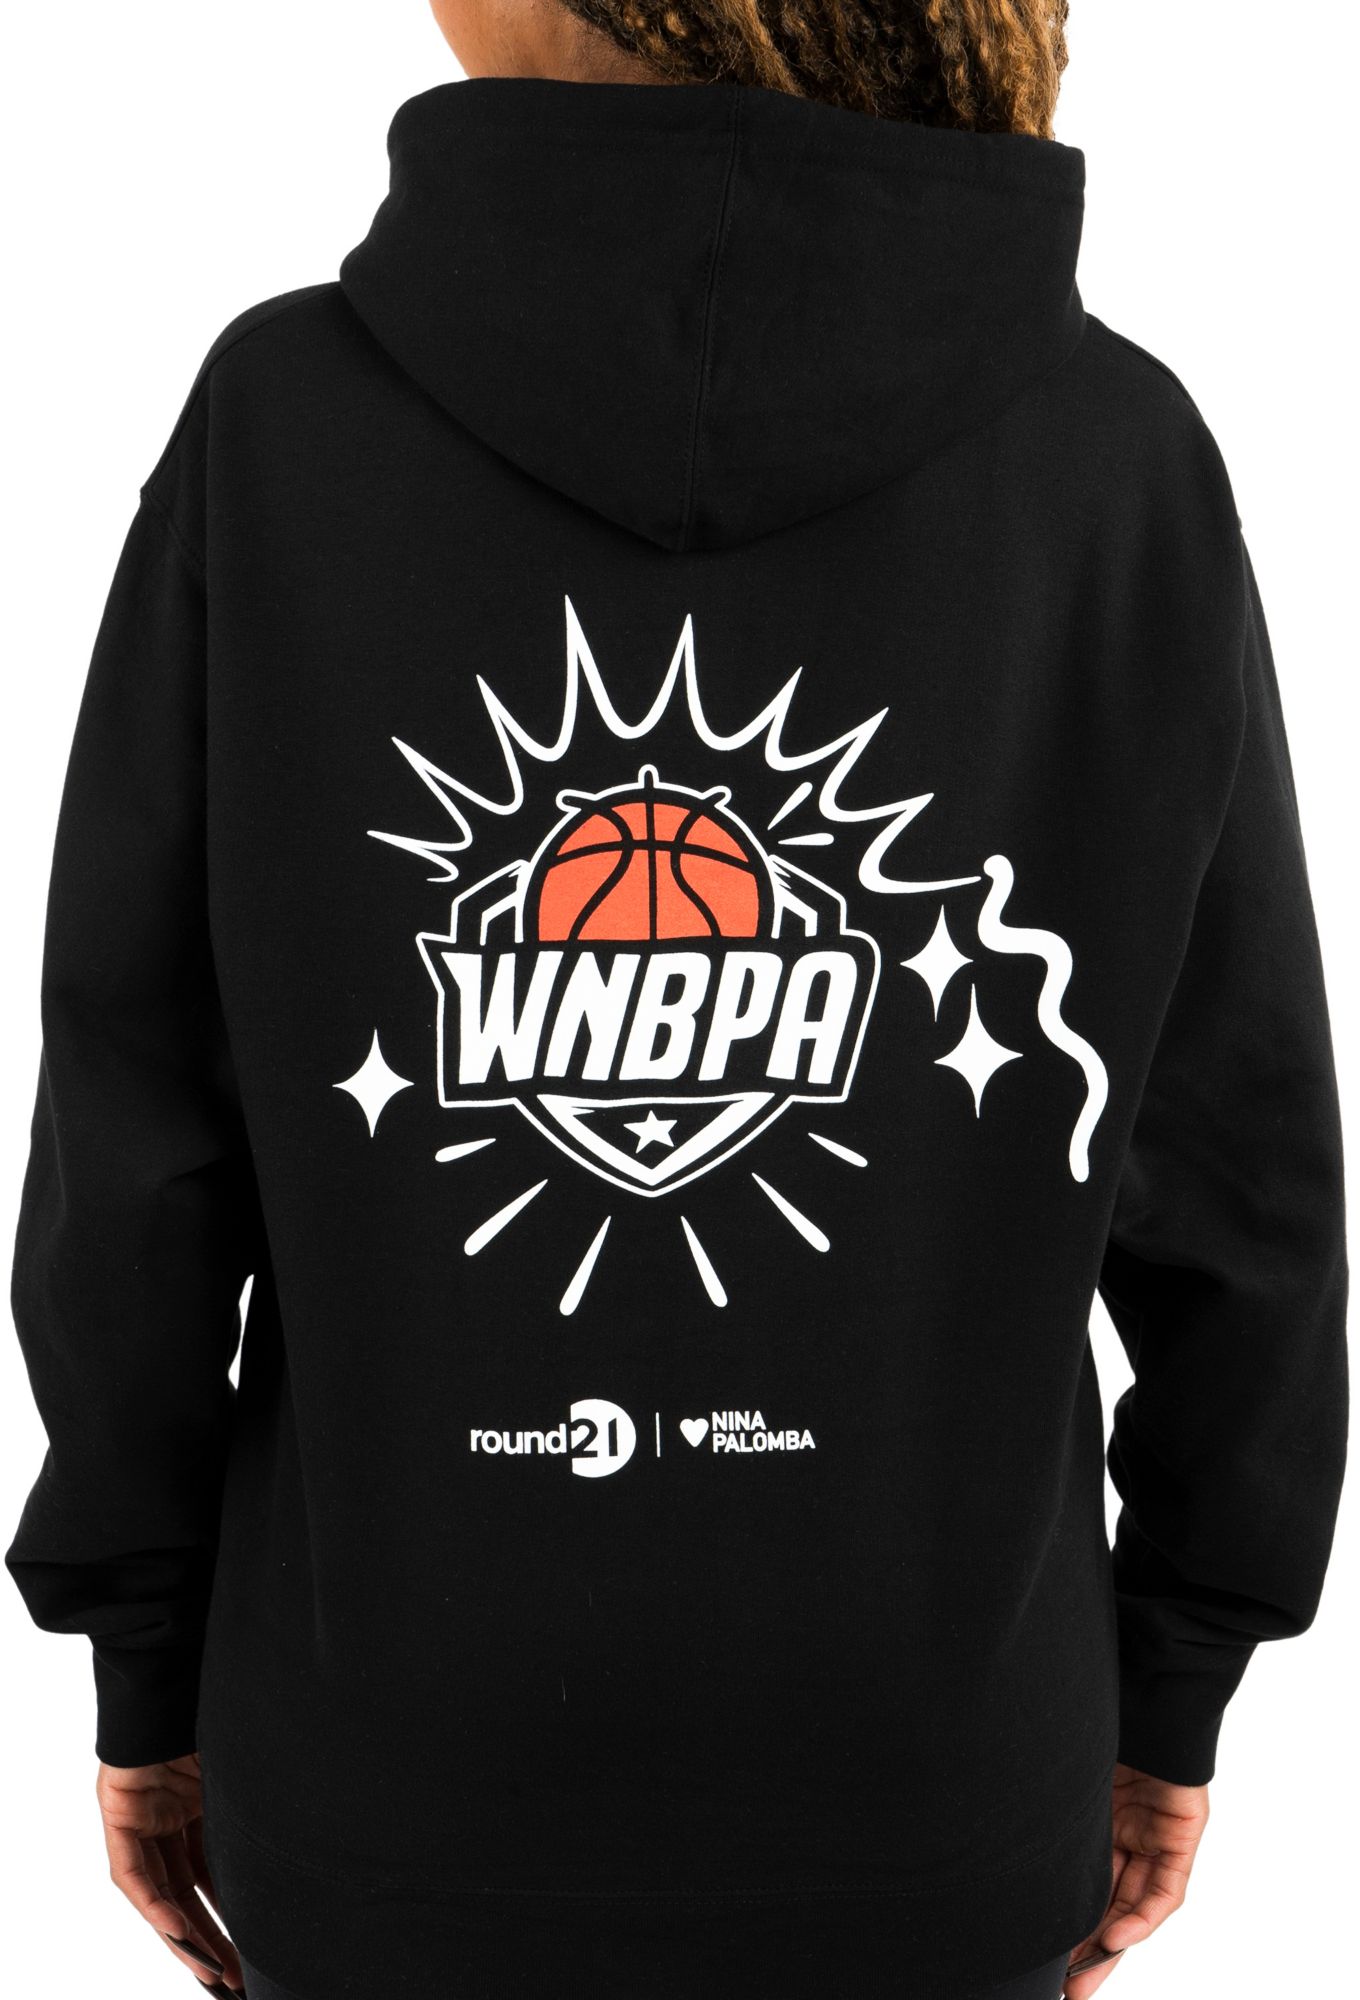 Round 21 WNBA Voices Black Pullover Hoodie